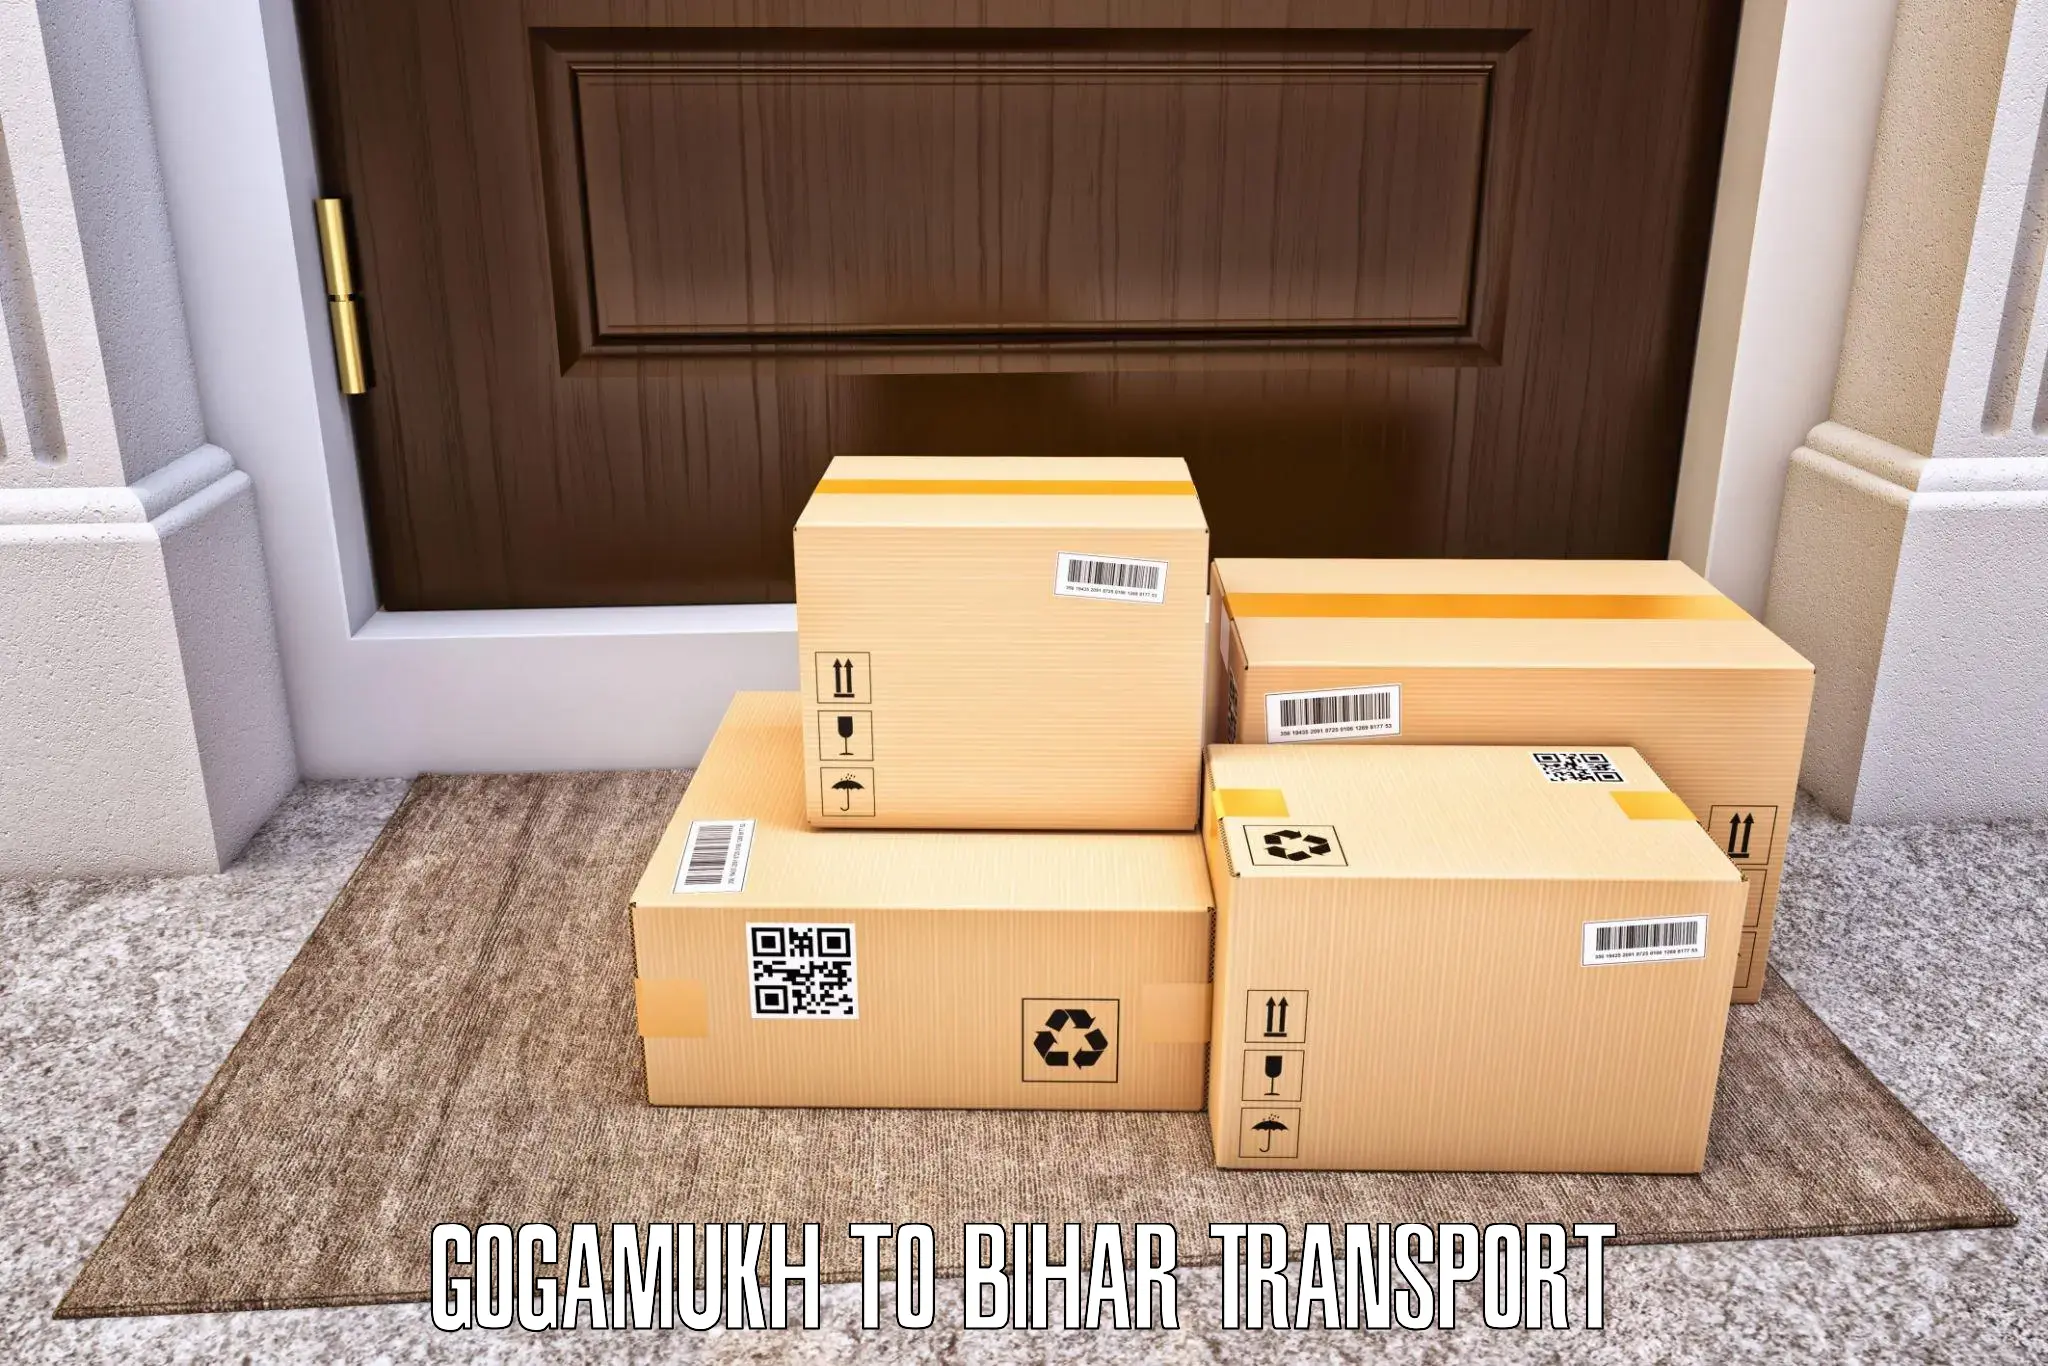 International cargo transportation services Gogamukh to Hazrat Jandaha